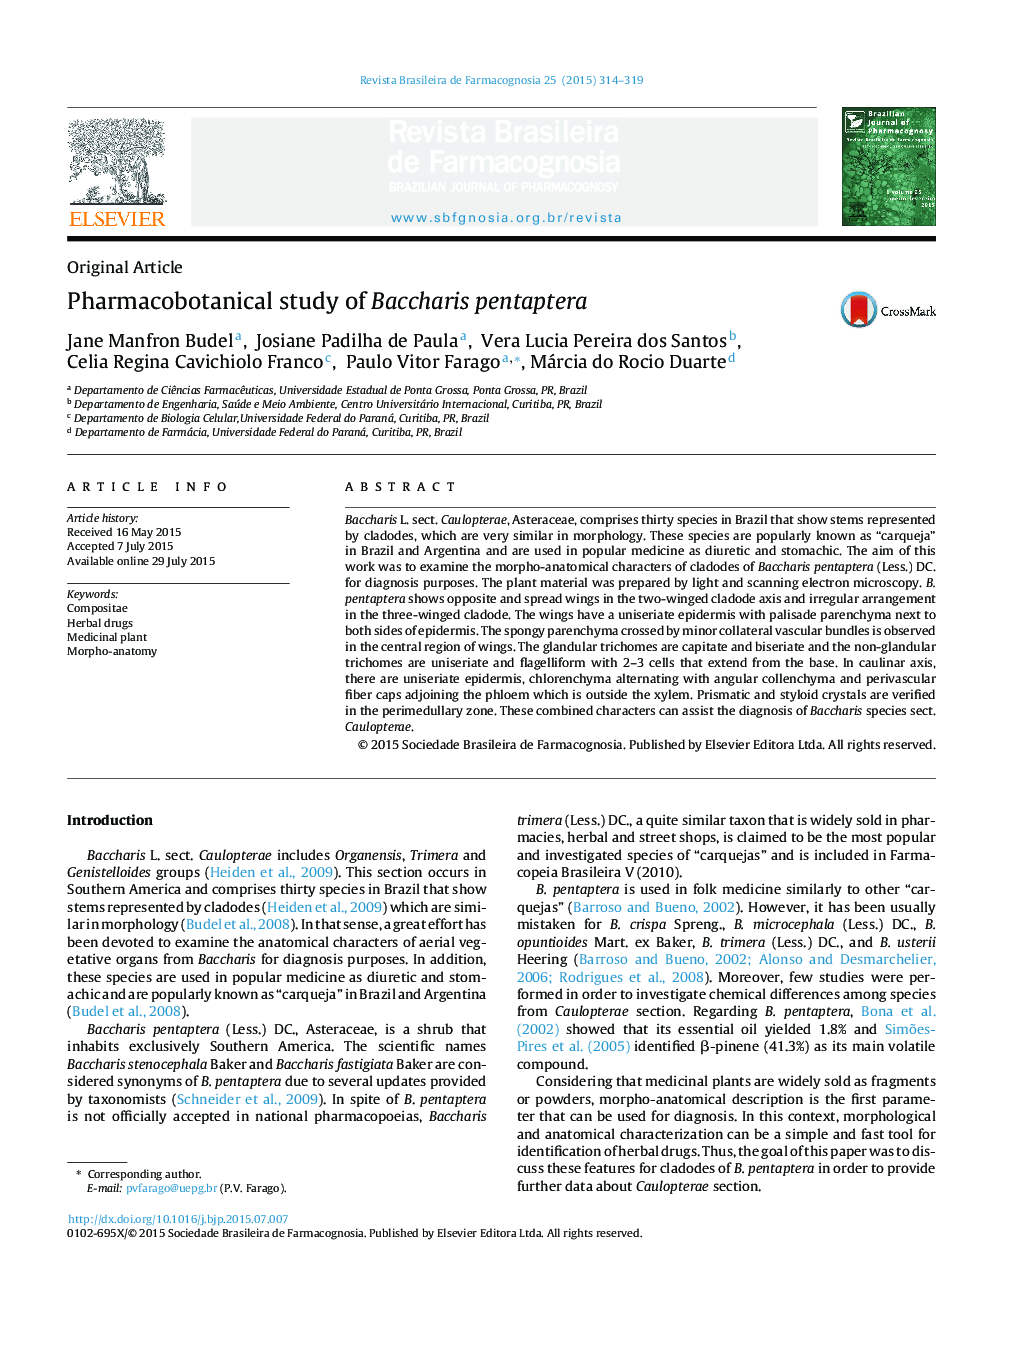 Pharmacobotanical study of Baccharis pentaptera